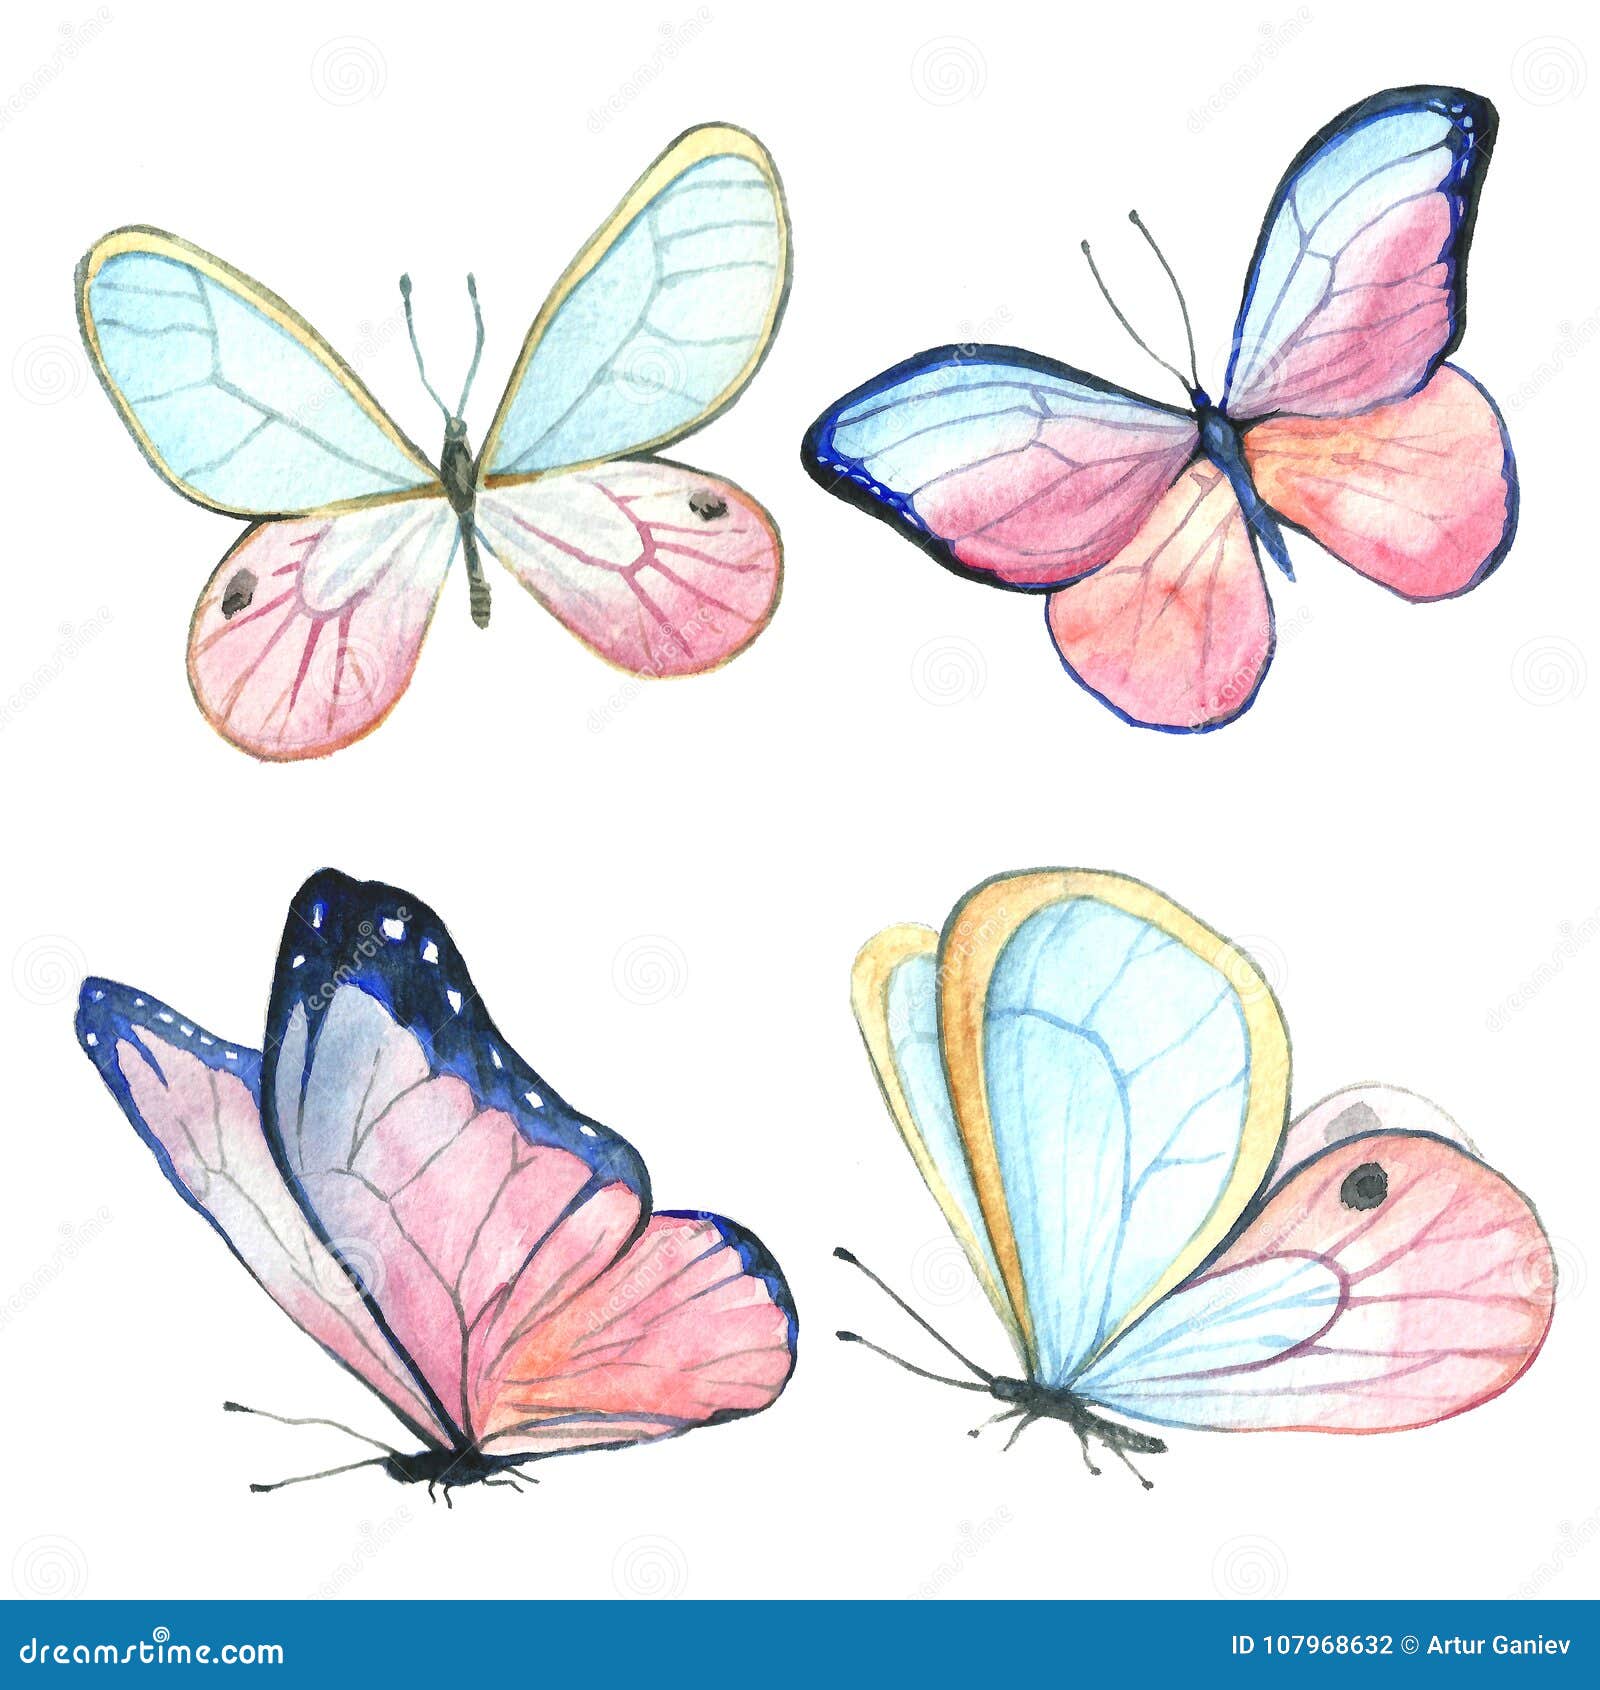 light blue butterfly clipart